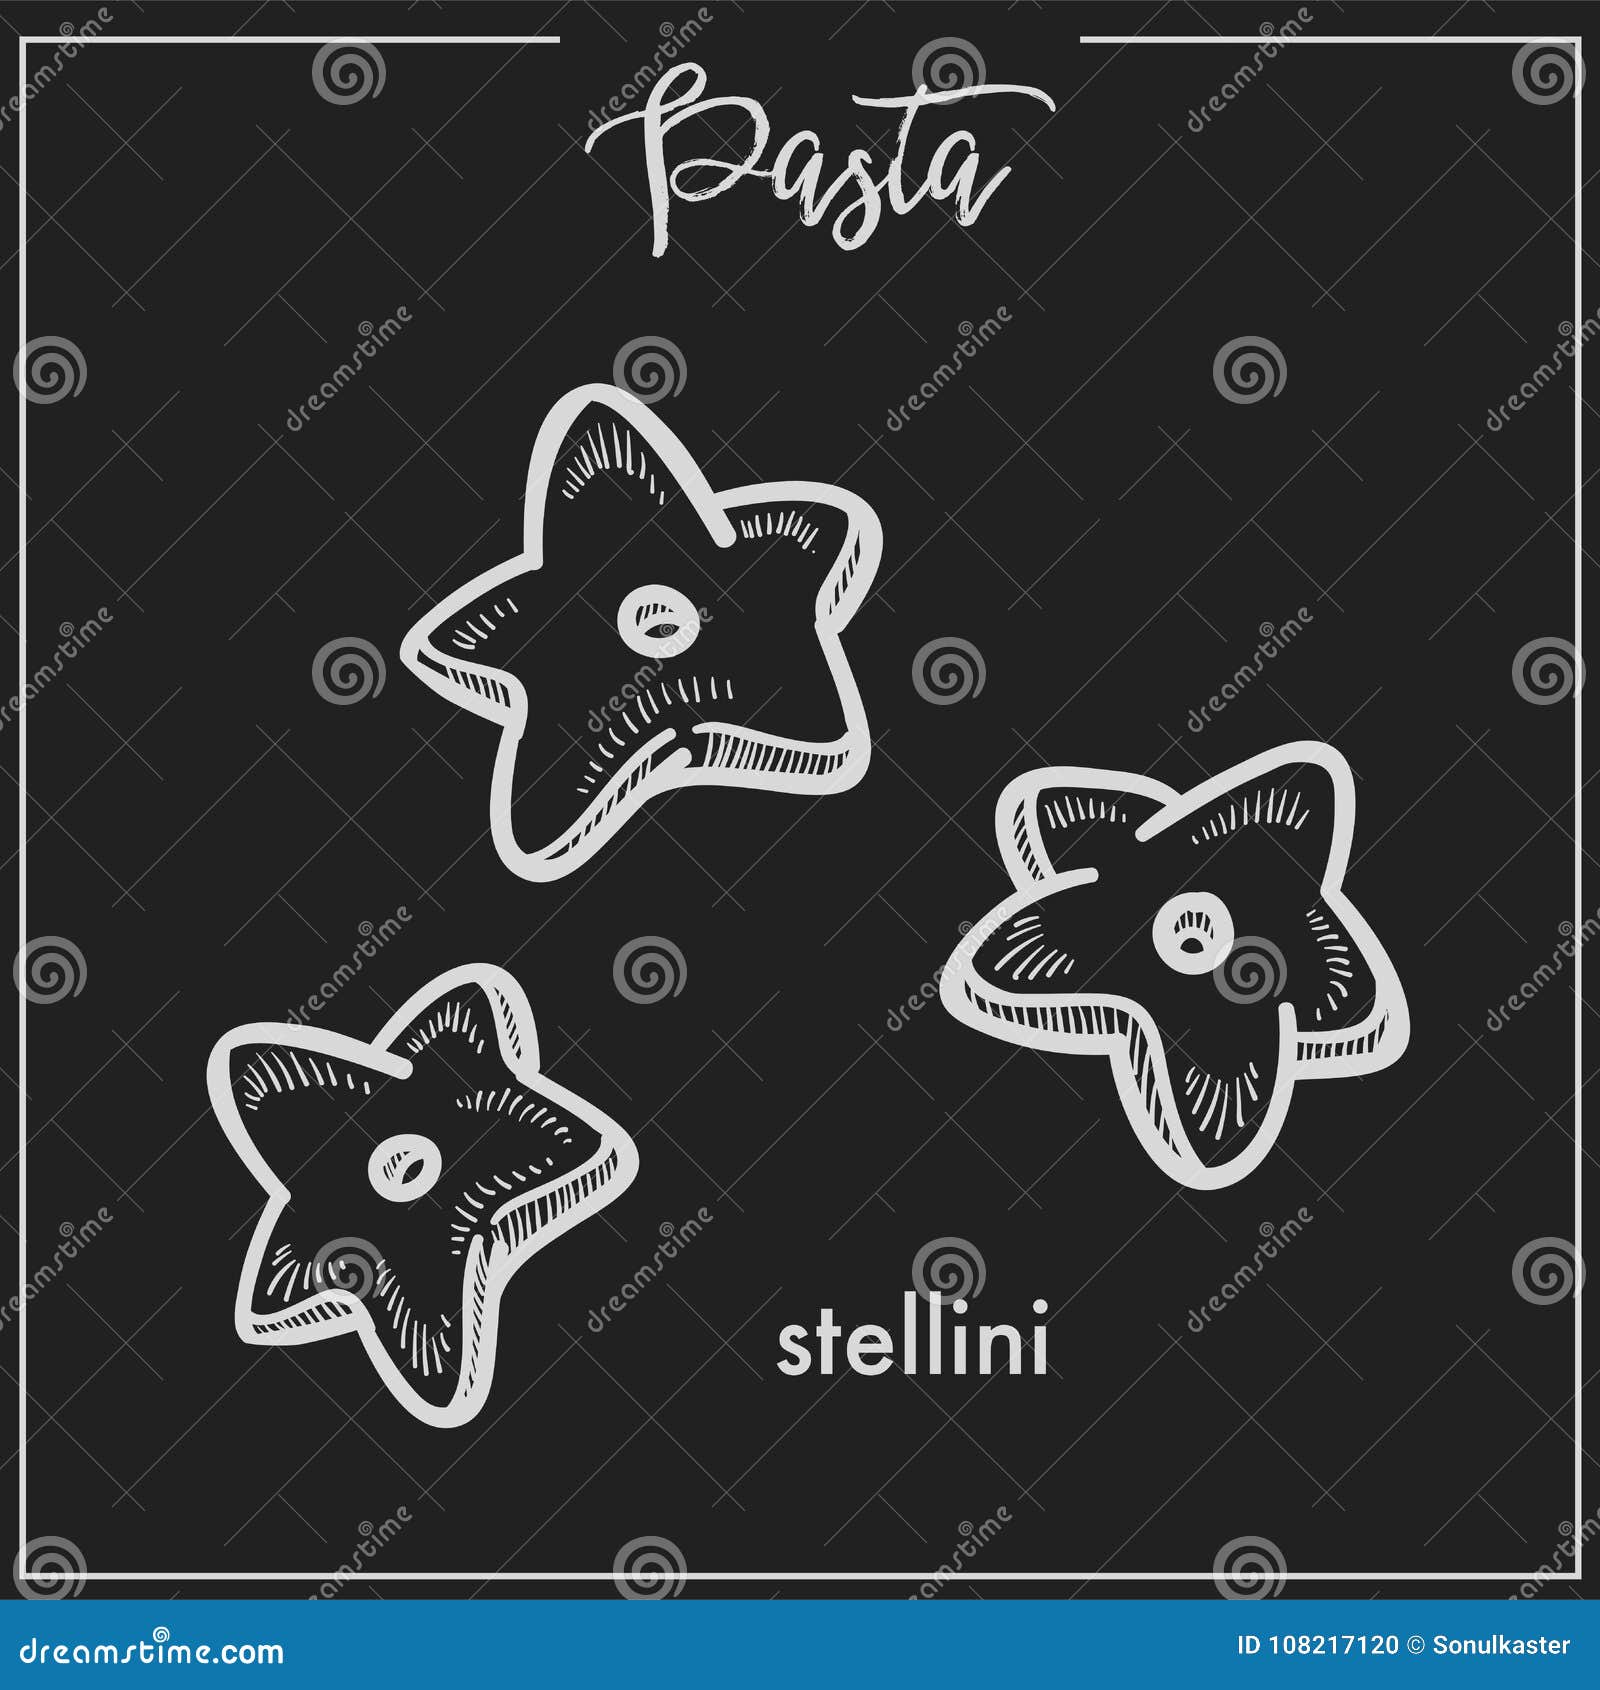 Stelline Pasta Starfish